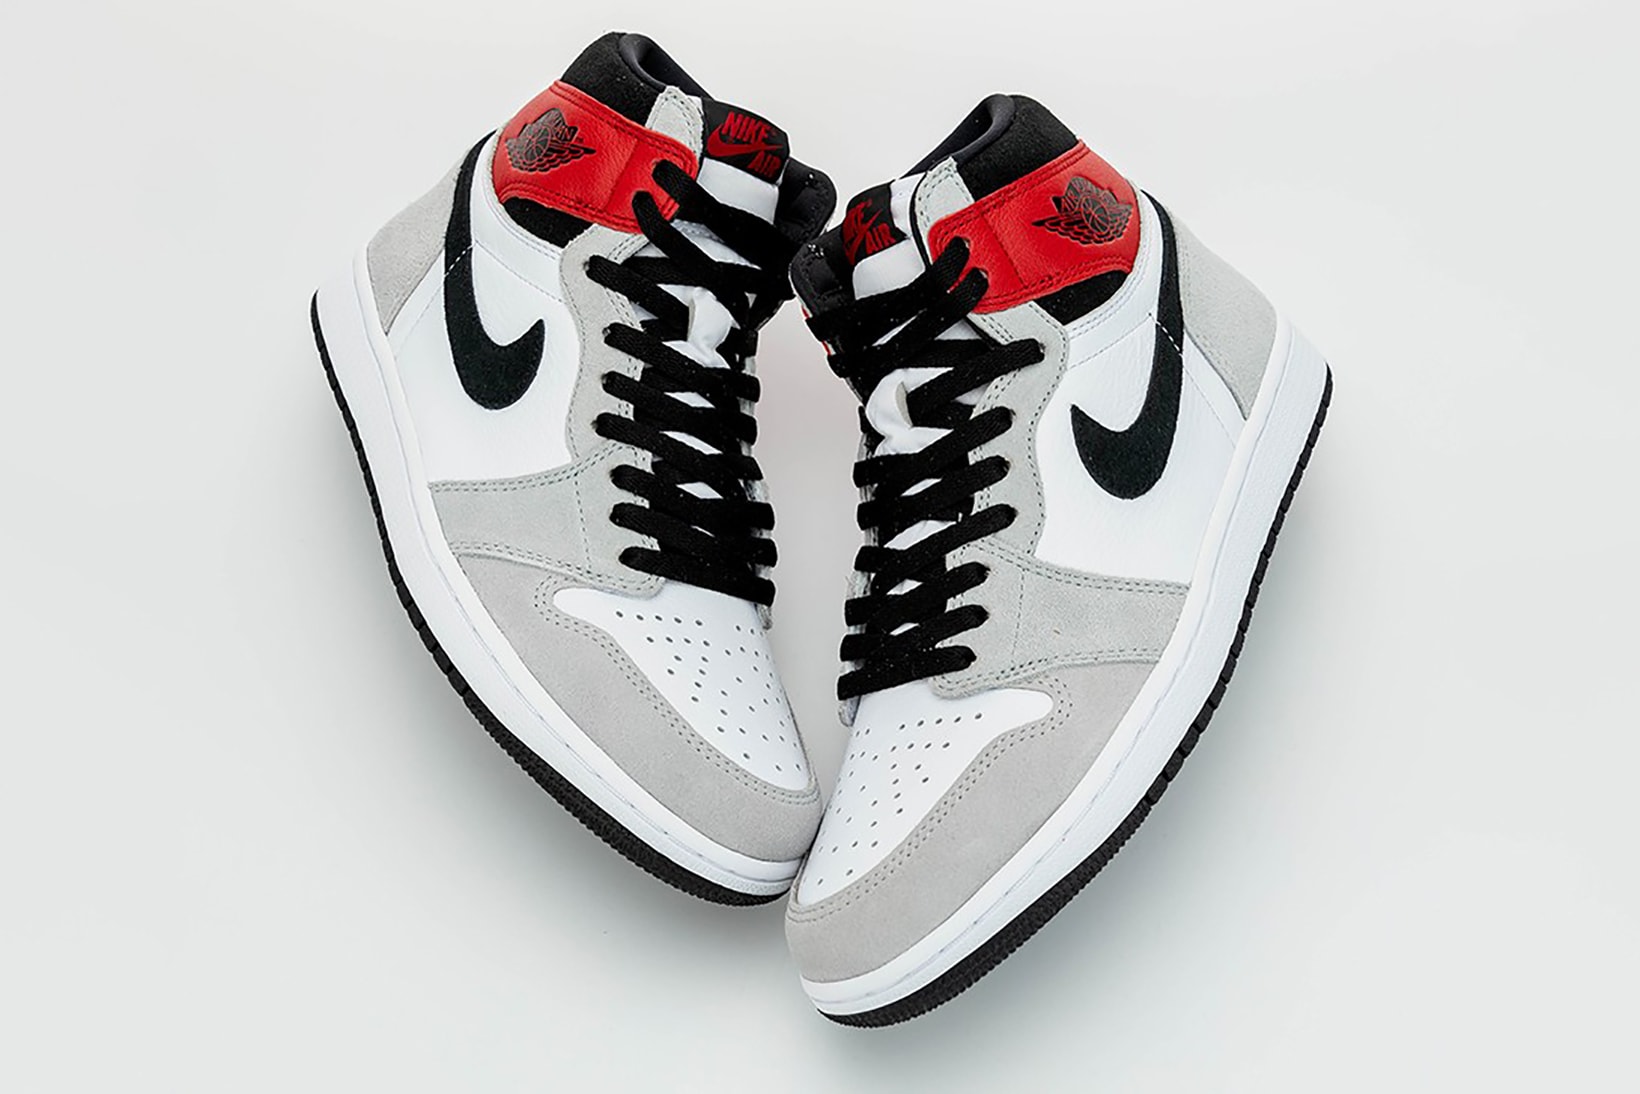 nike air jordan 1 retro high og sneakers grey white red shoes footwear sneakerhead